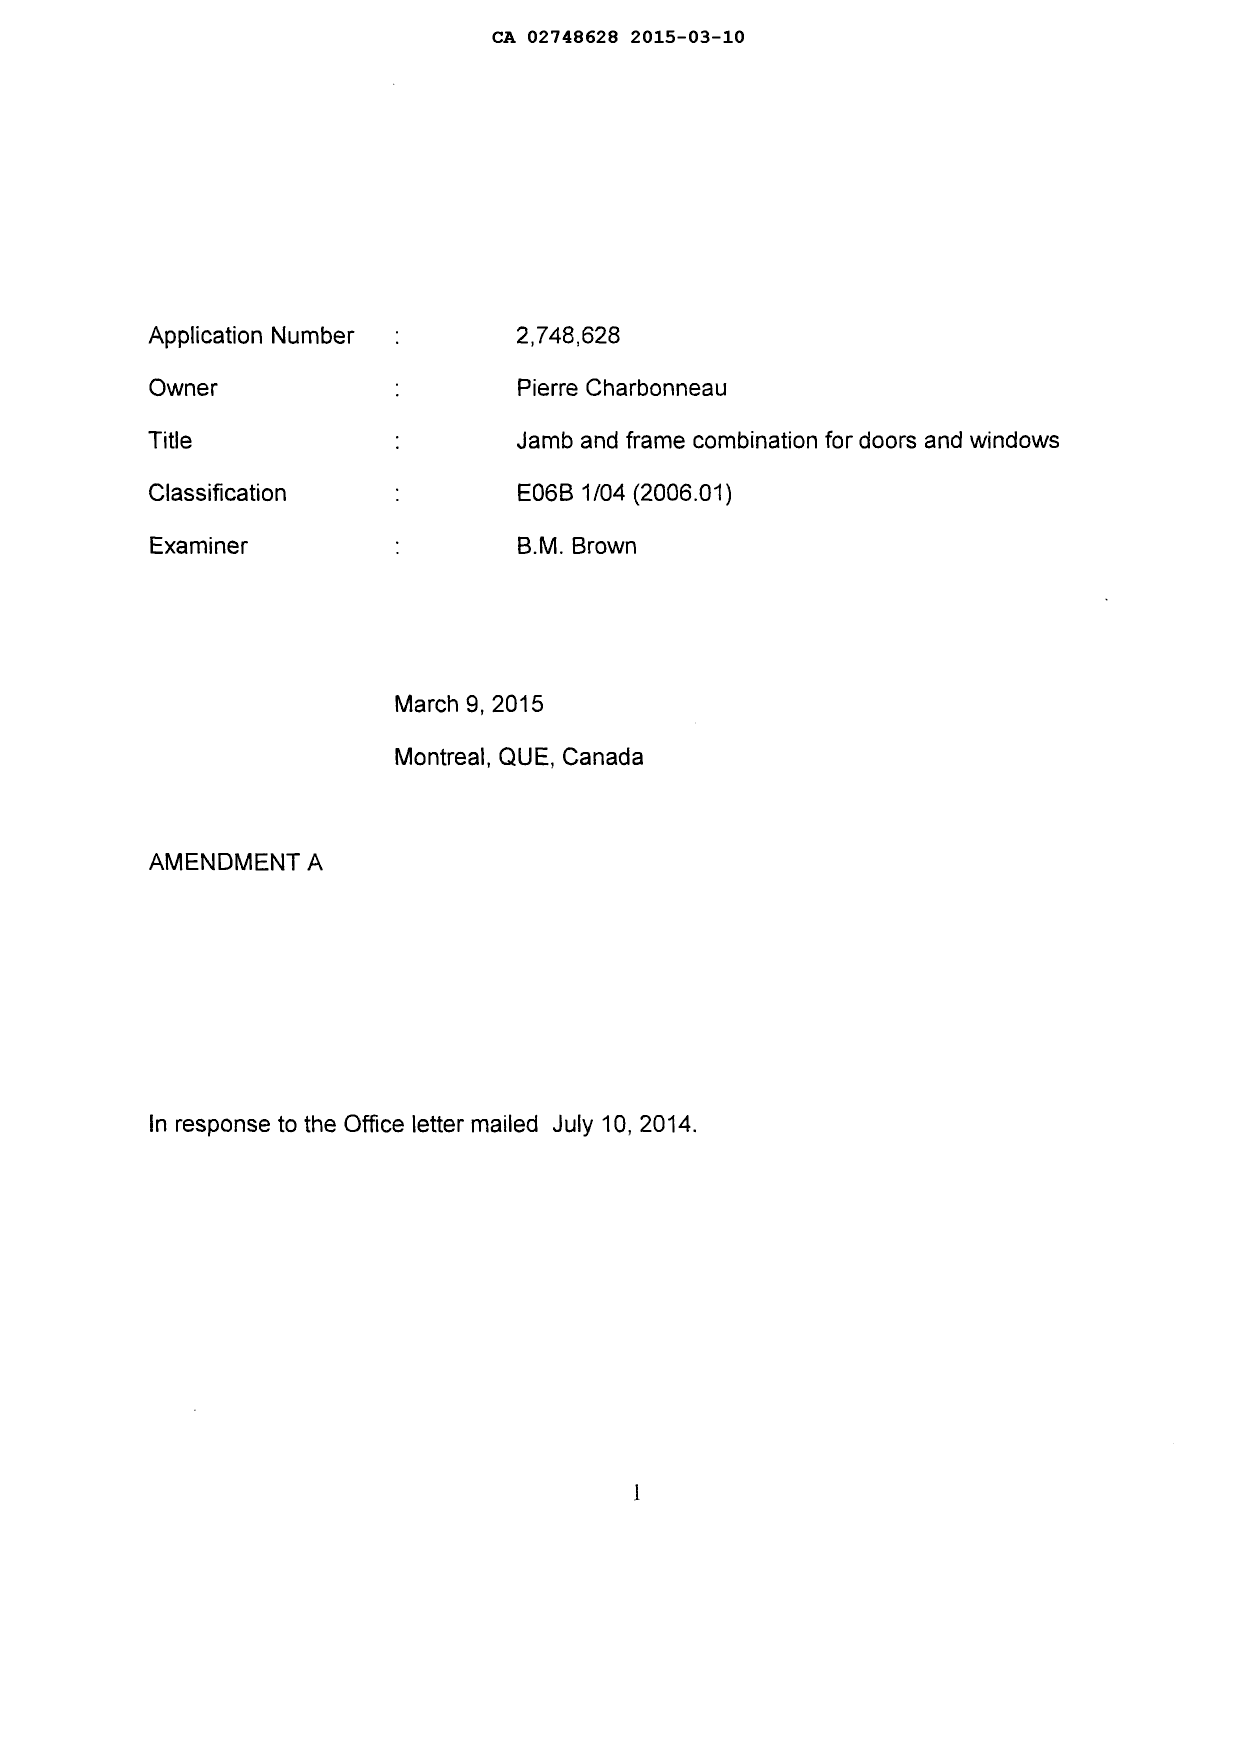 Document de brevet canadien 2748628. Poursuite-Amendment 20141210. Image 2 de 9